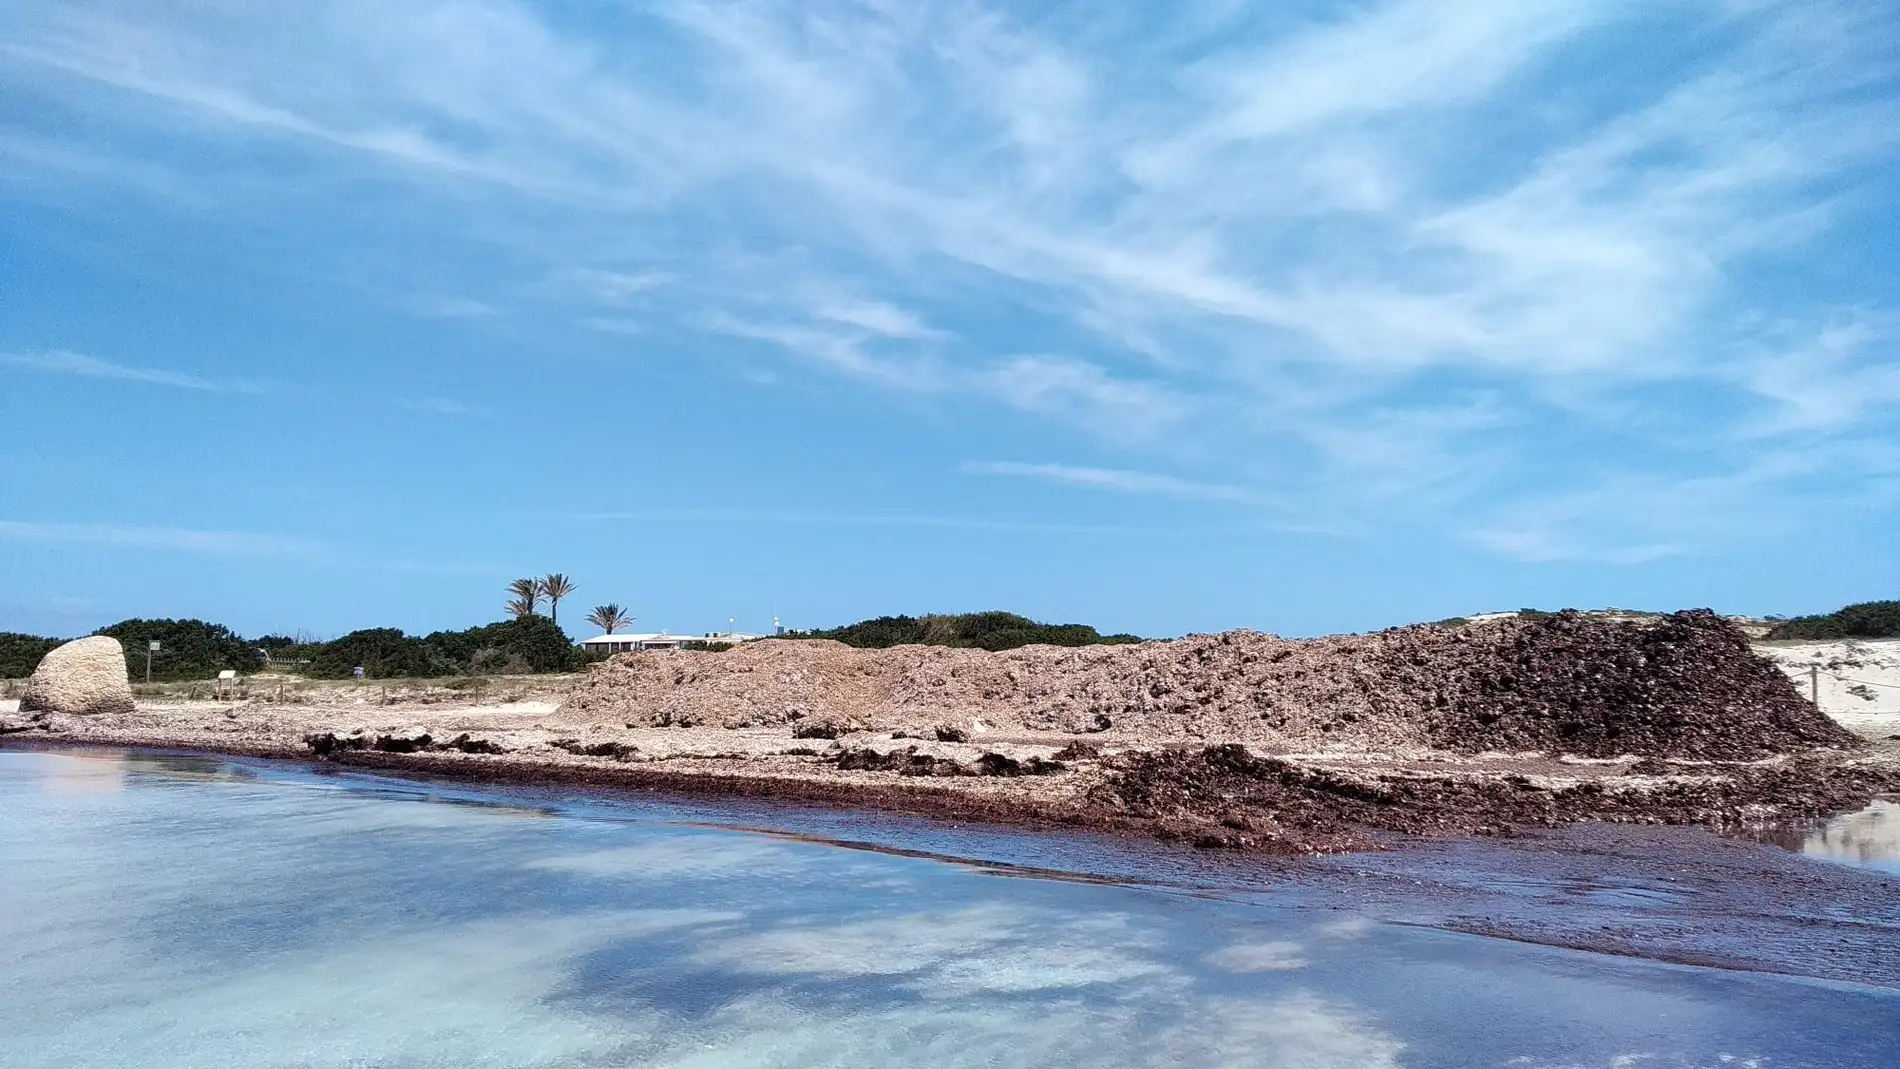  El Consell de Formentera ofrece la posidonia retirada de las playas para su uso tradicional